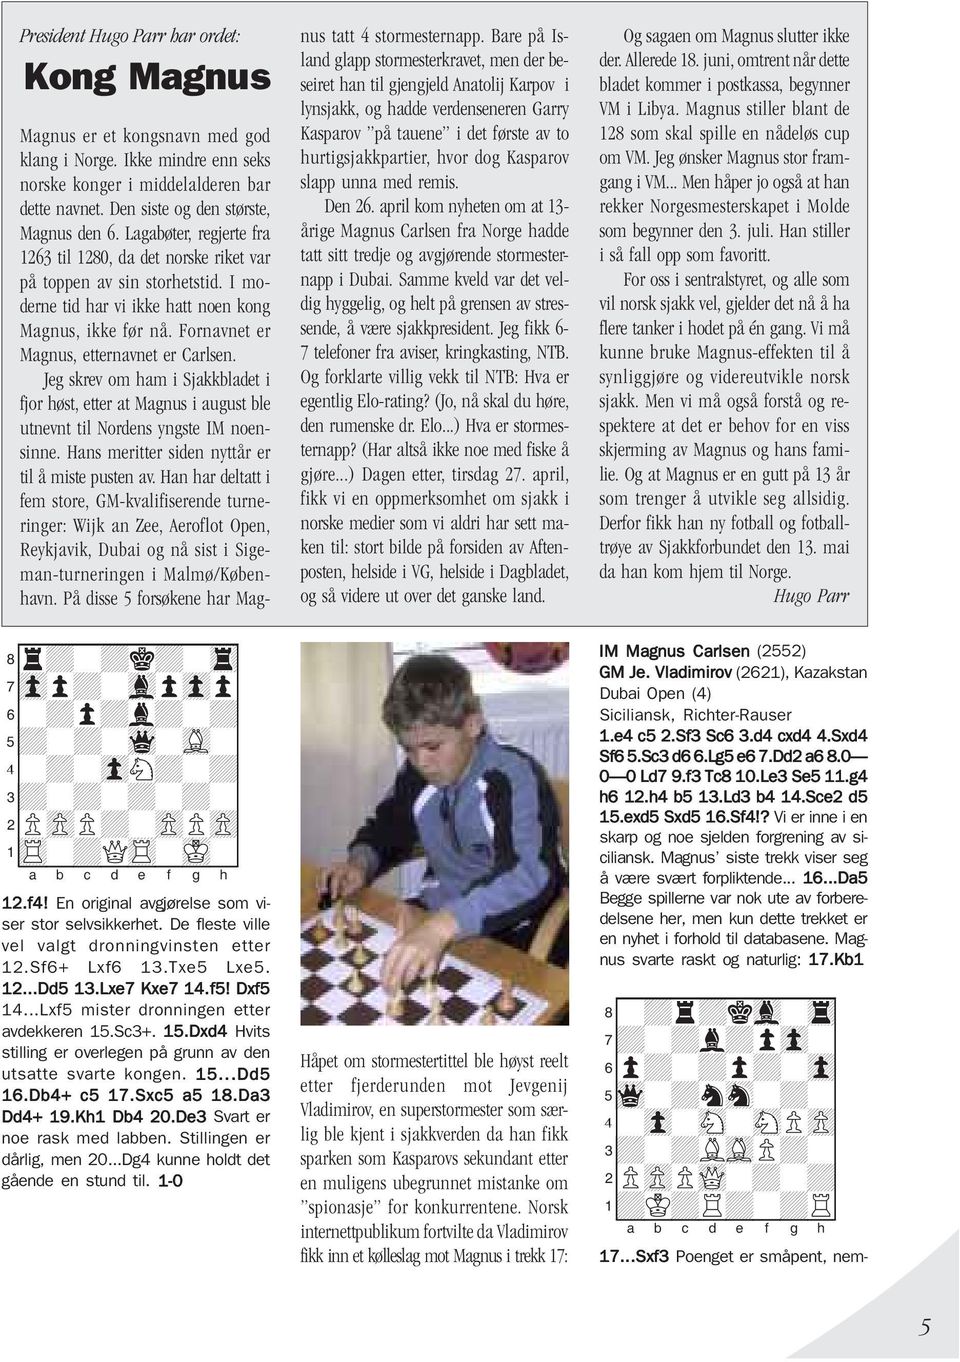 Jeg skrev om ham i Sjakkbladet i fjor høst, etter at Magnus i august ble utnevnt til Nordens yngste IM noensinne. Hans meritter siden nyttår er til å miste pusten av.